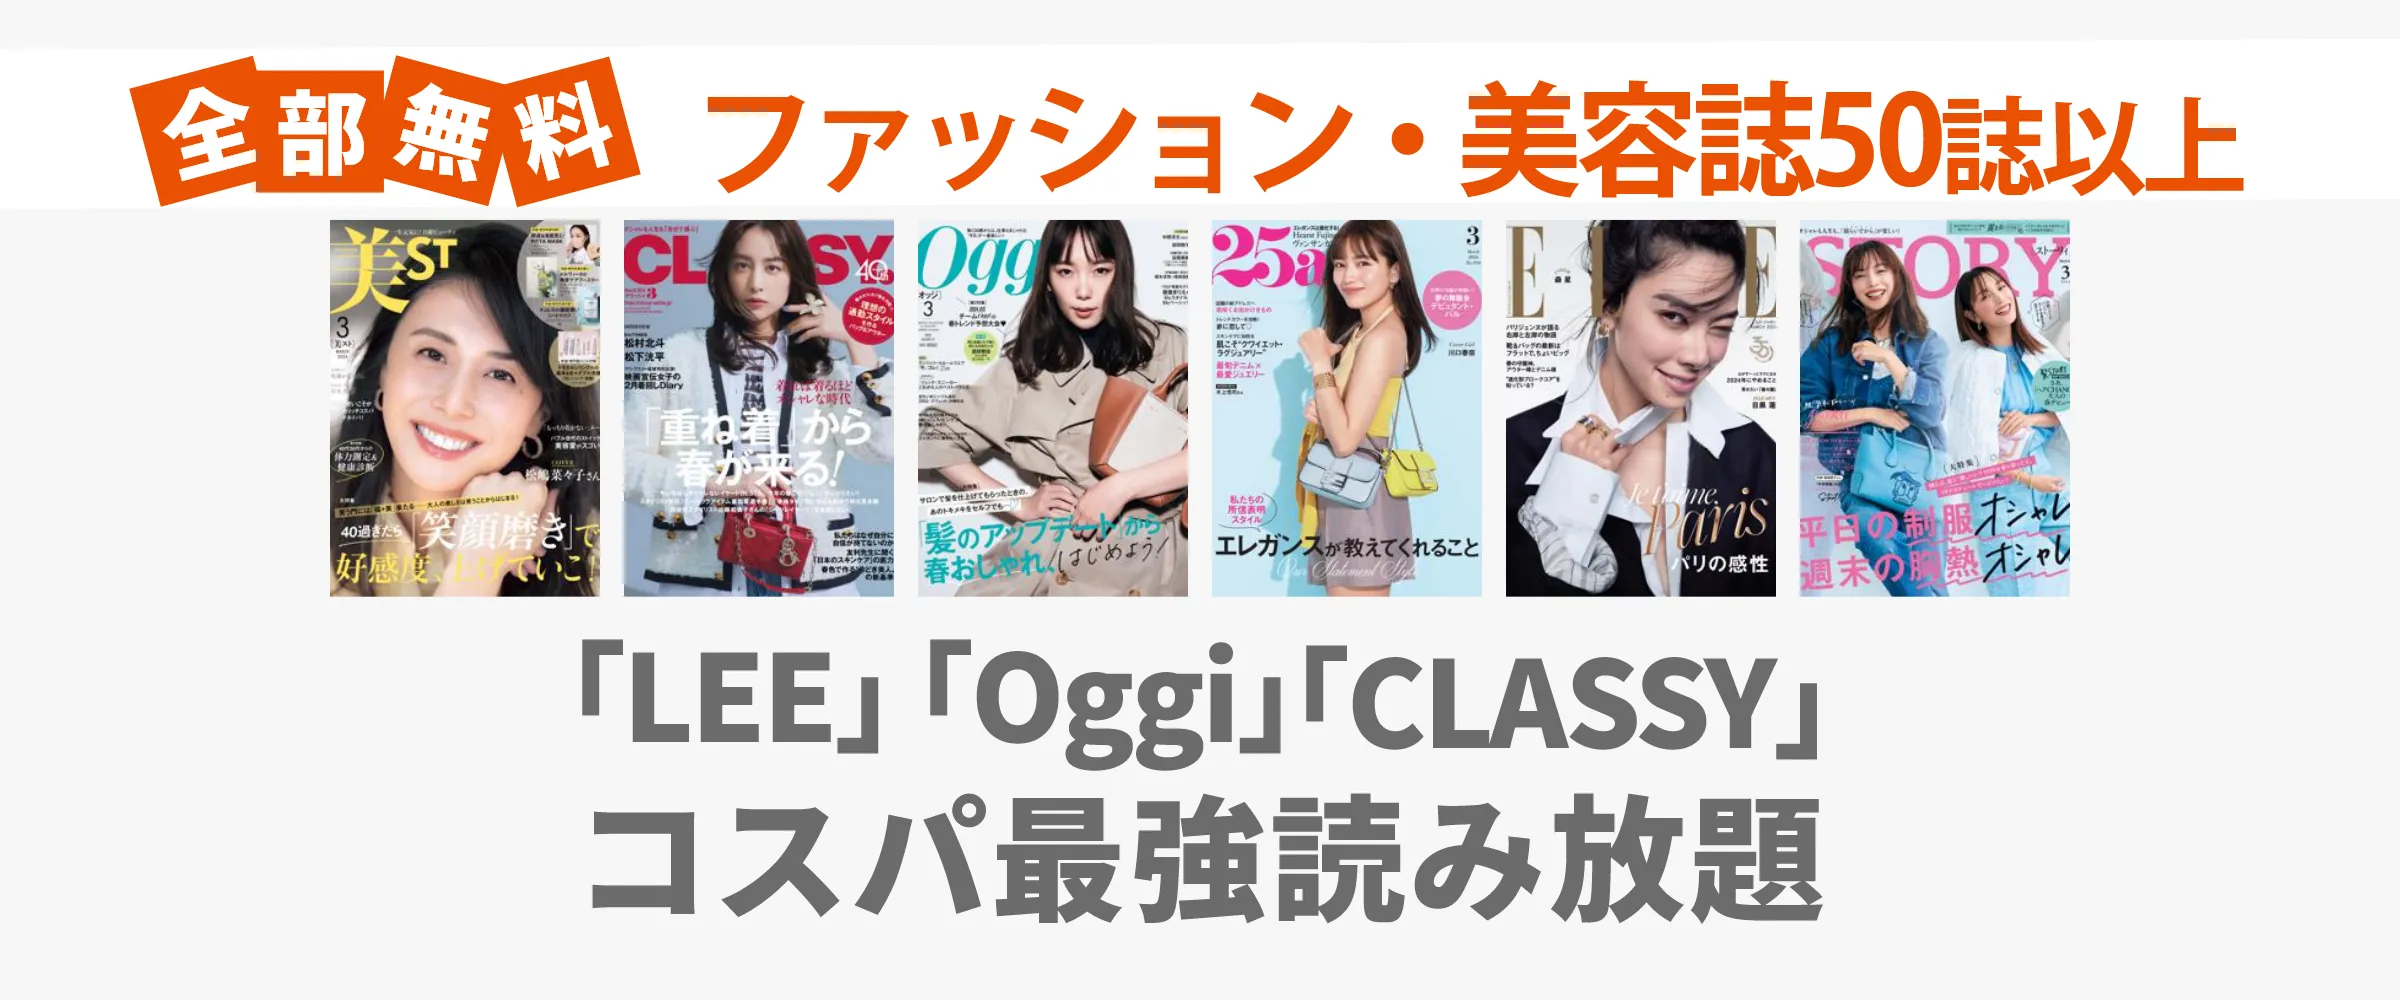 たった550円でLEE、Oggi、CLASSYなどファッション・美容雑誌100誌以上読み放題。最初の1ヵ月無料。